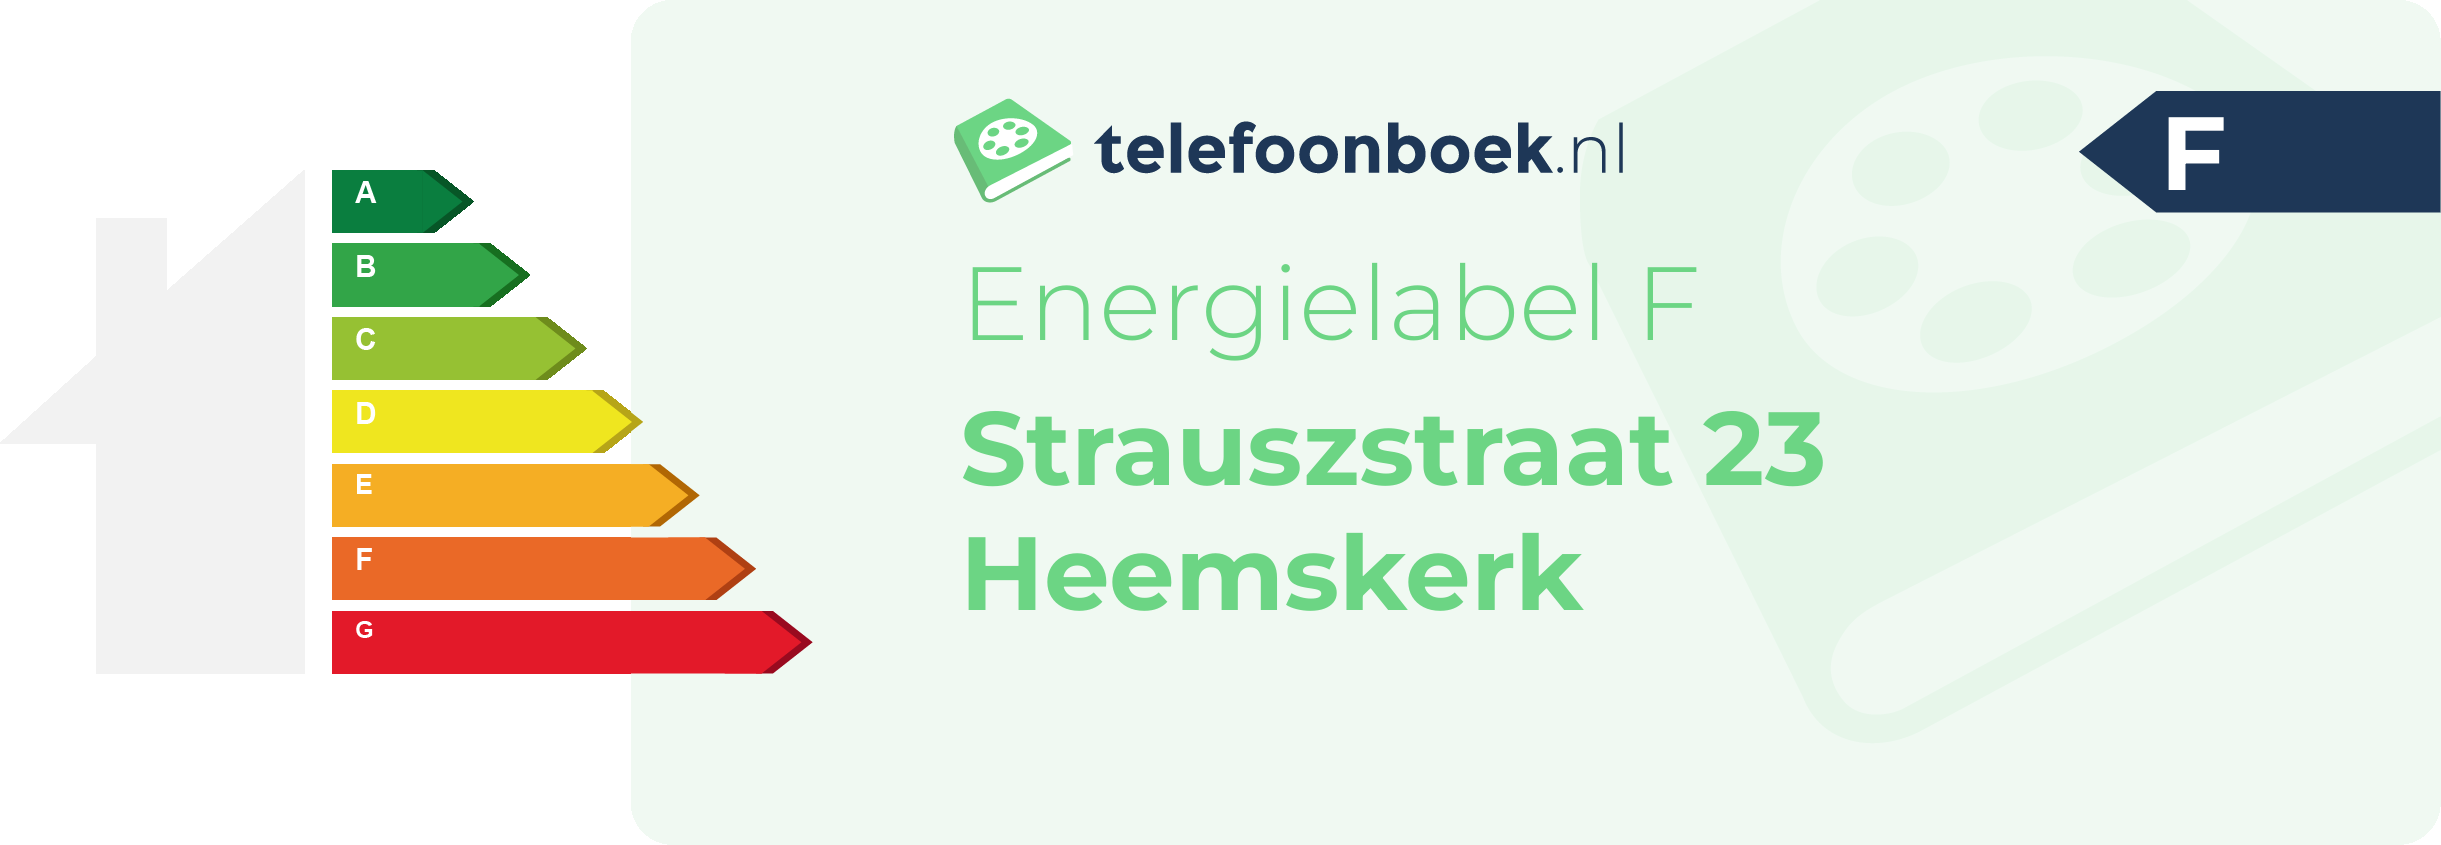 Energielabel Strauszstraat 23 Heemskerk